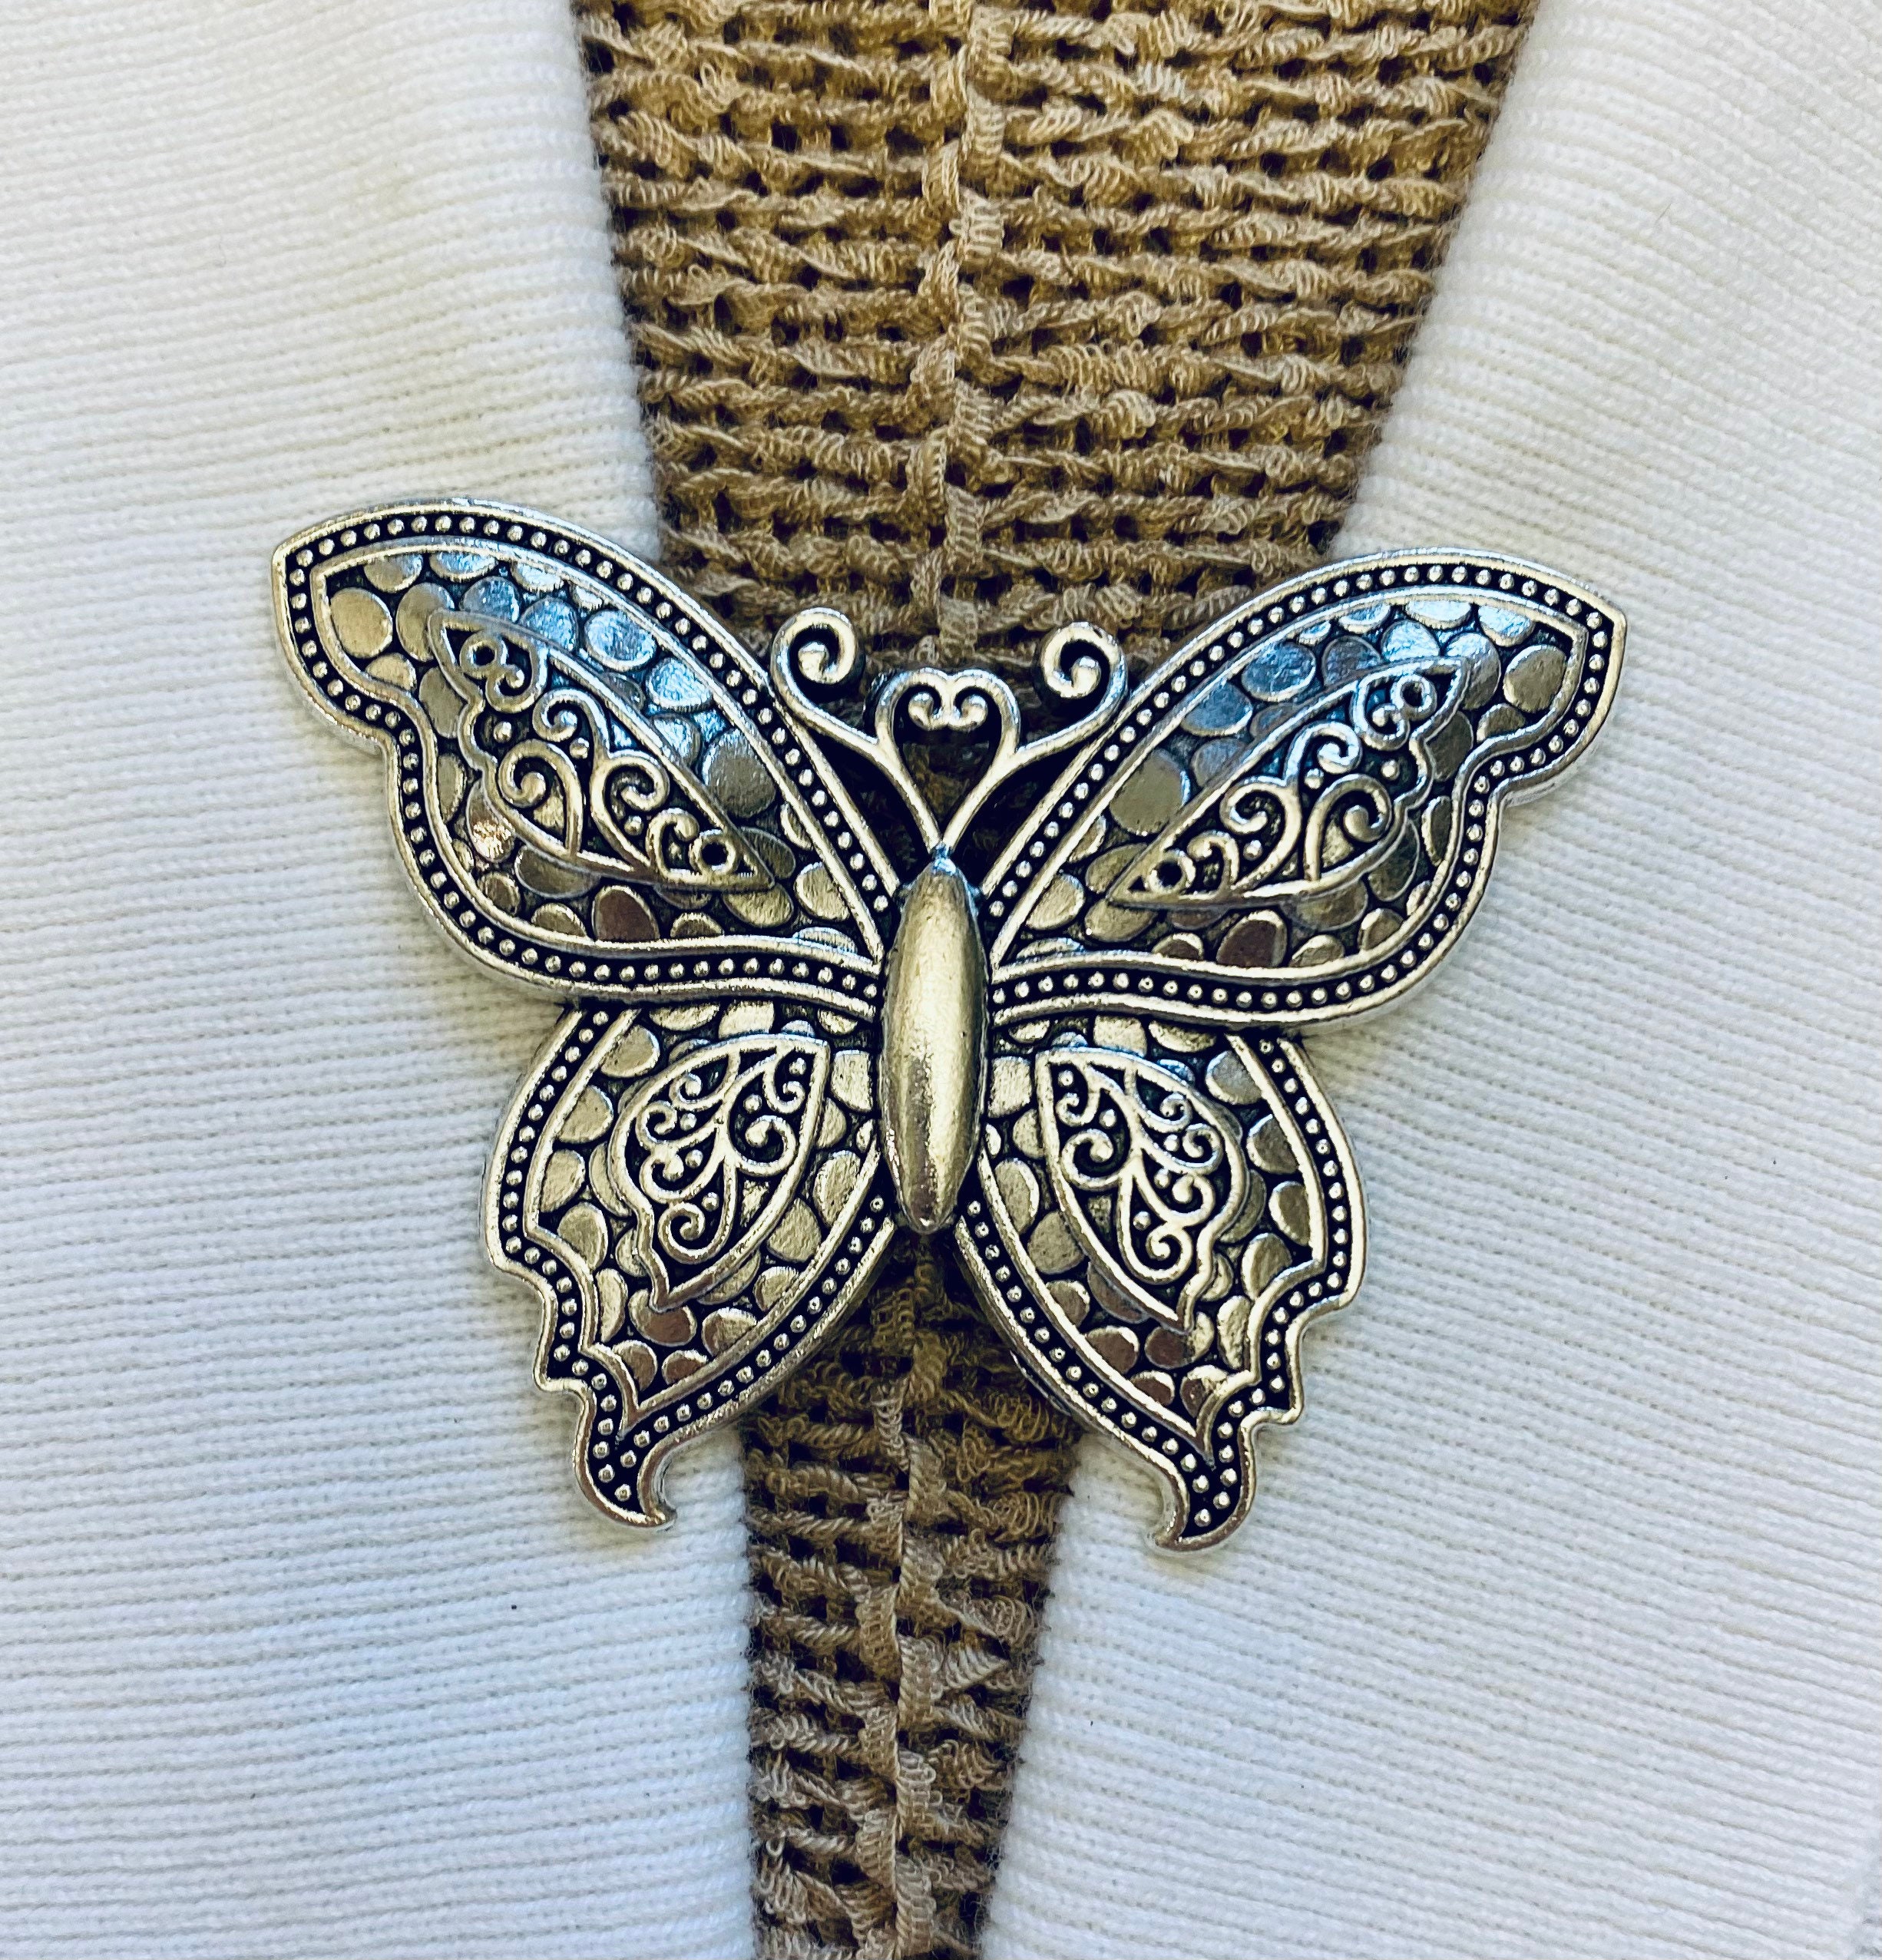 hegibaer 25 Neue Silberne Verschlüsse Butterfly Clips für Badge